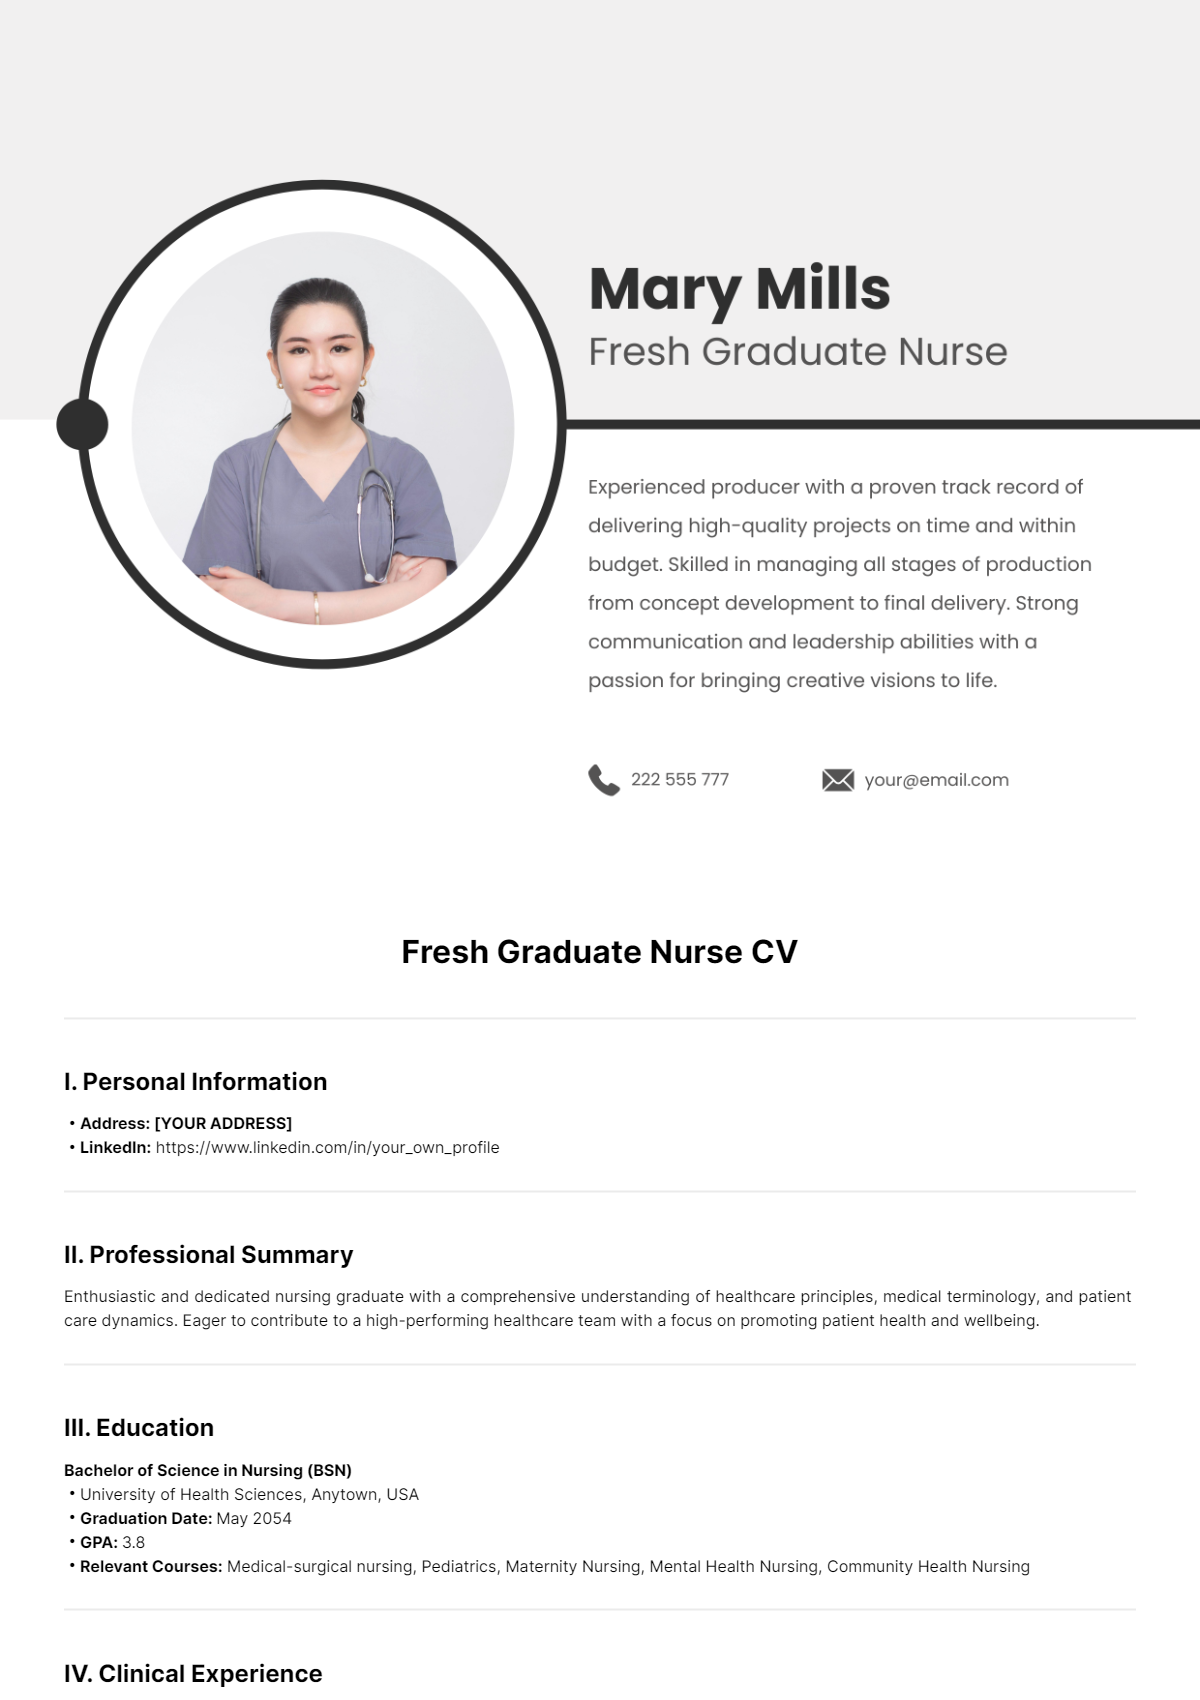 Fresh Graduate Nurse CV Template